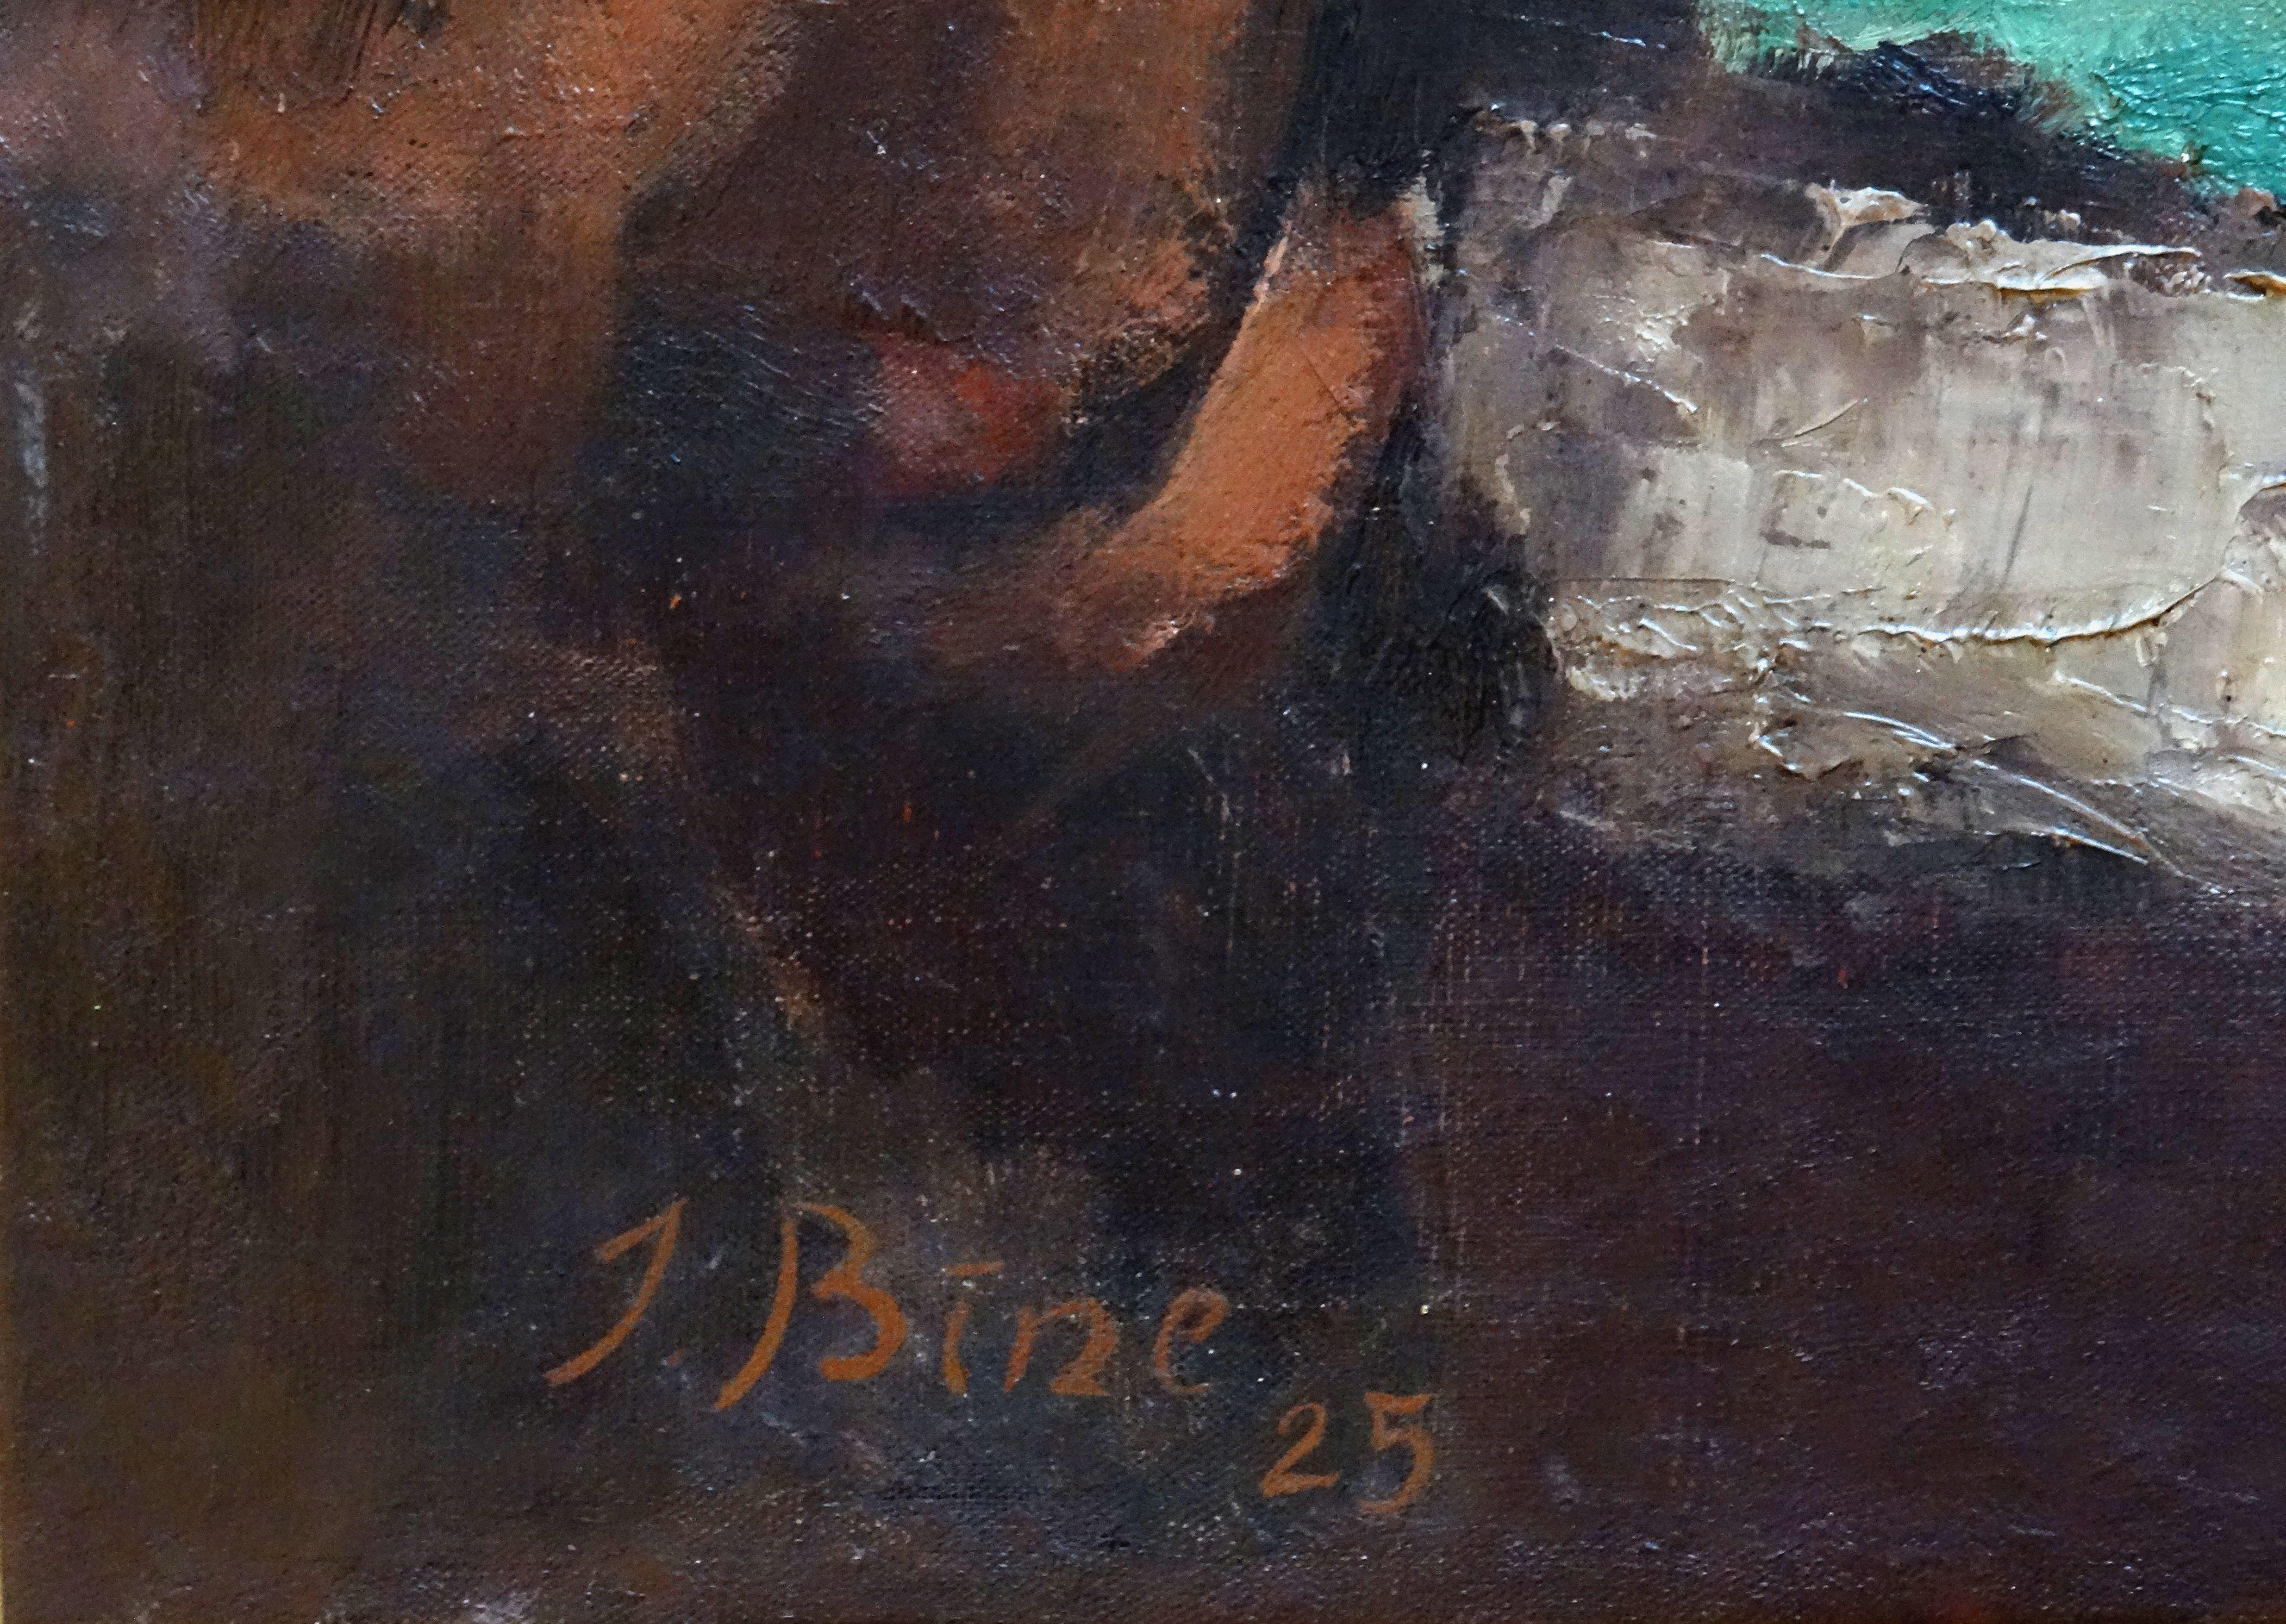 Nu masculin. 1925, huile sur toile, 81x116 cm

Artistics Bine (1895 11 04 Riga - 1955 24 10 Riga) peintre, artiste verrier, enseignant et auteur de critiques d'art.

Il a suivi une formation artistique à l'école d'art de Riga (1913-1915) et à